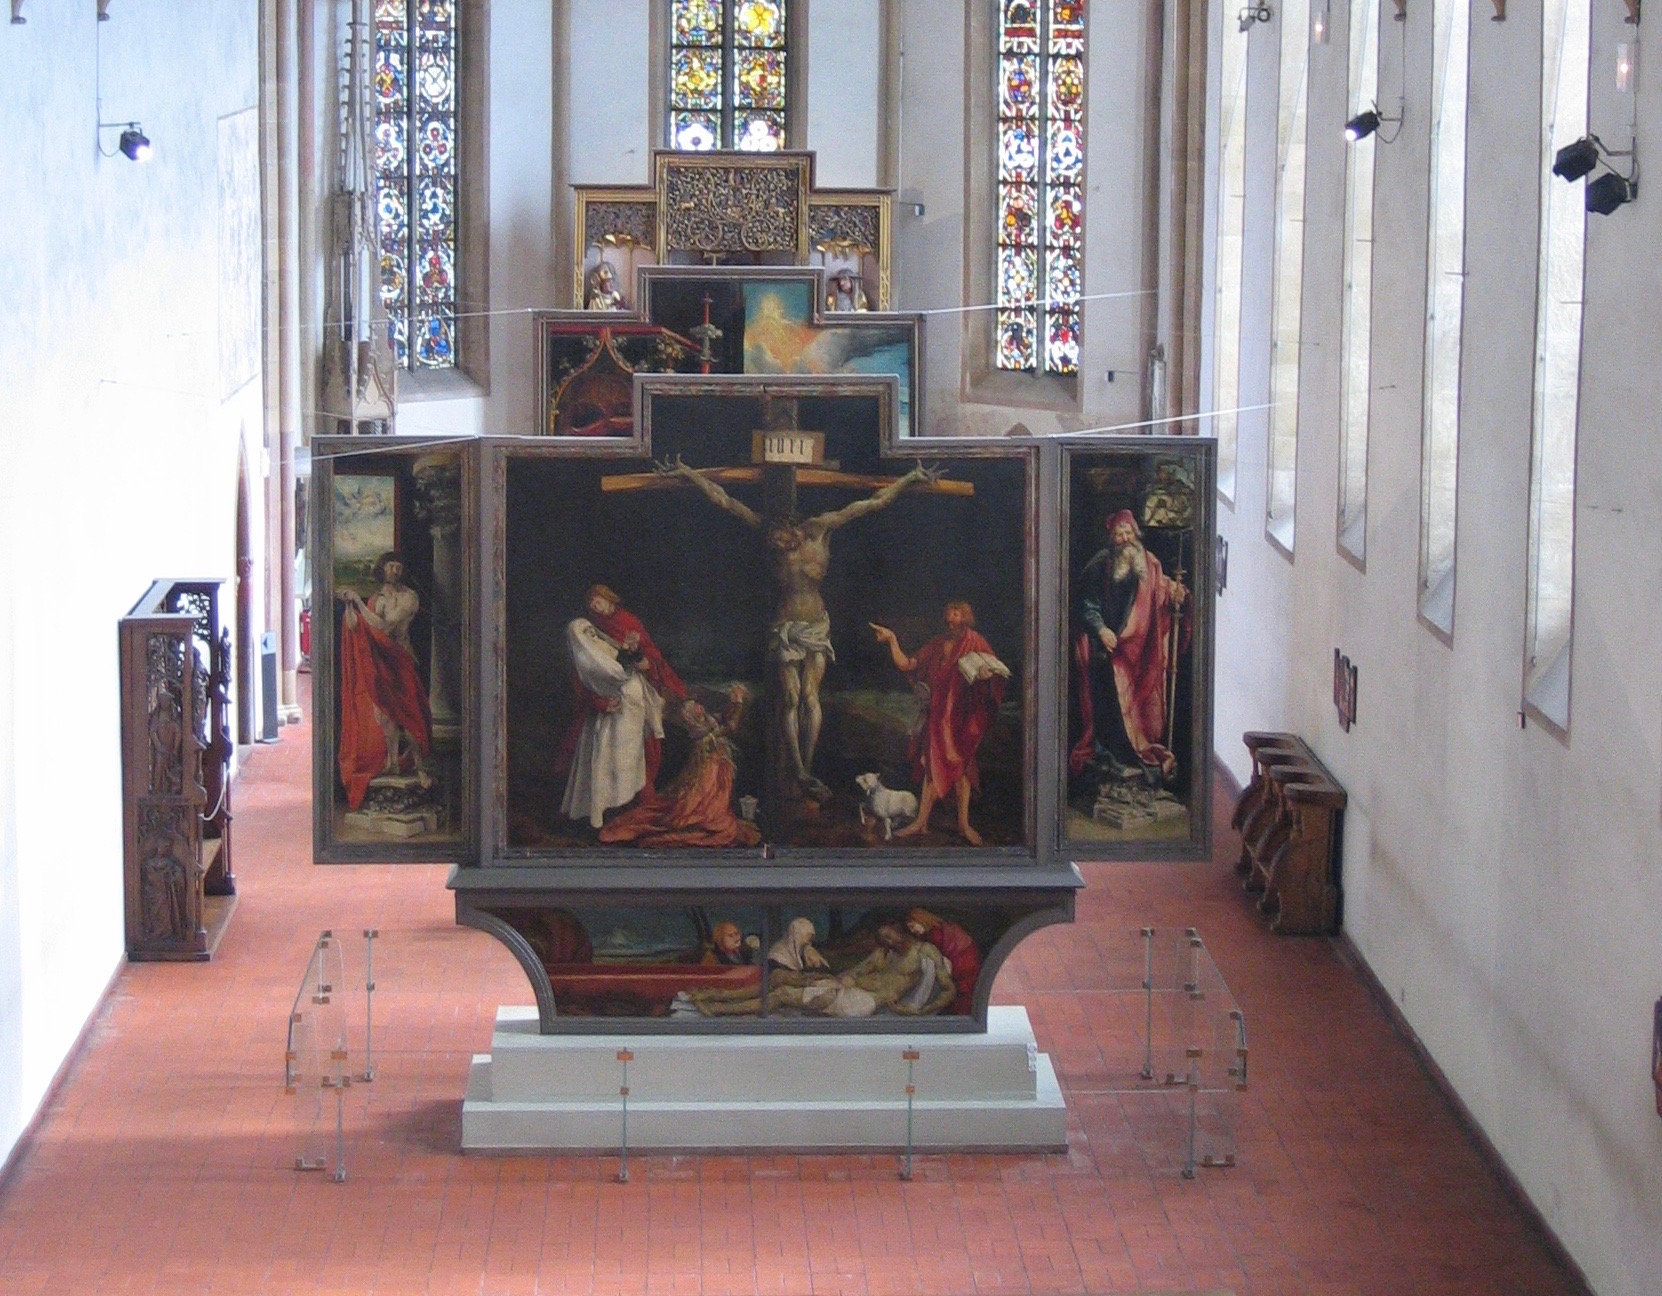 Chapel_of_Musée_d'Unterlinden_with_Isenheim_altarpiece.jpg